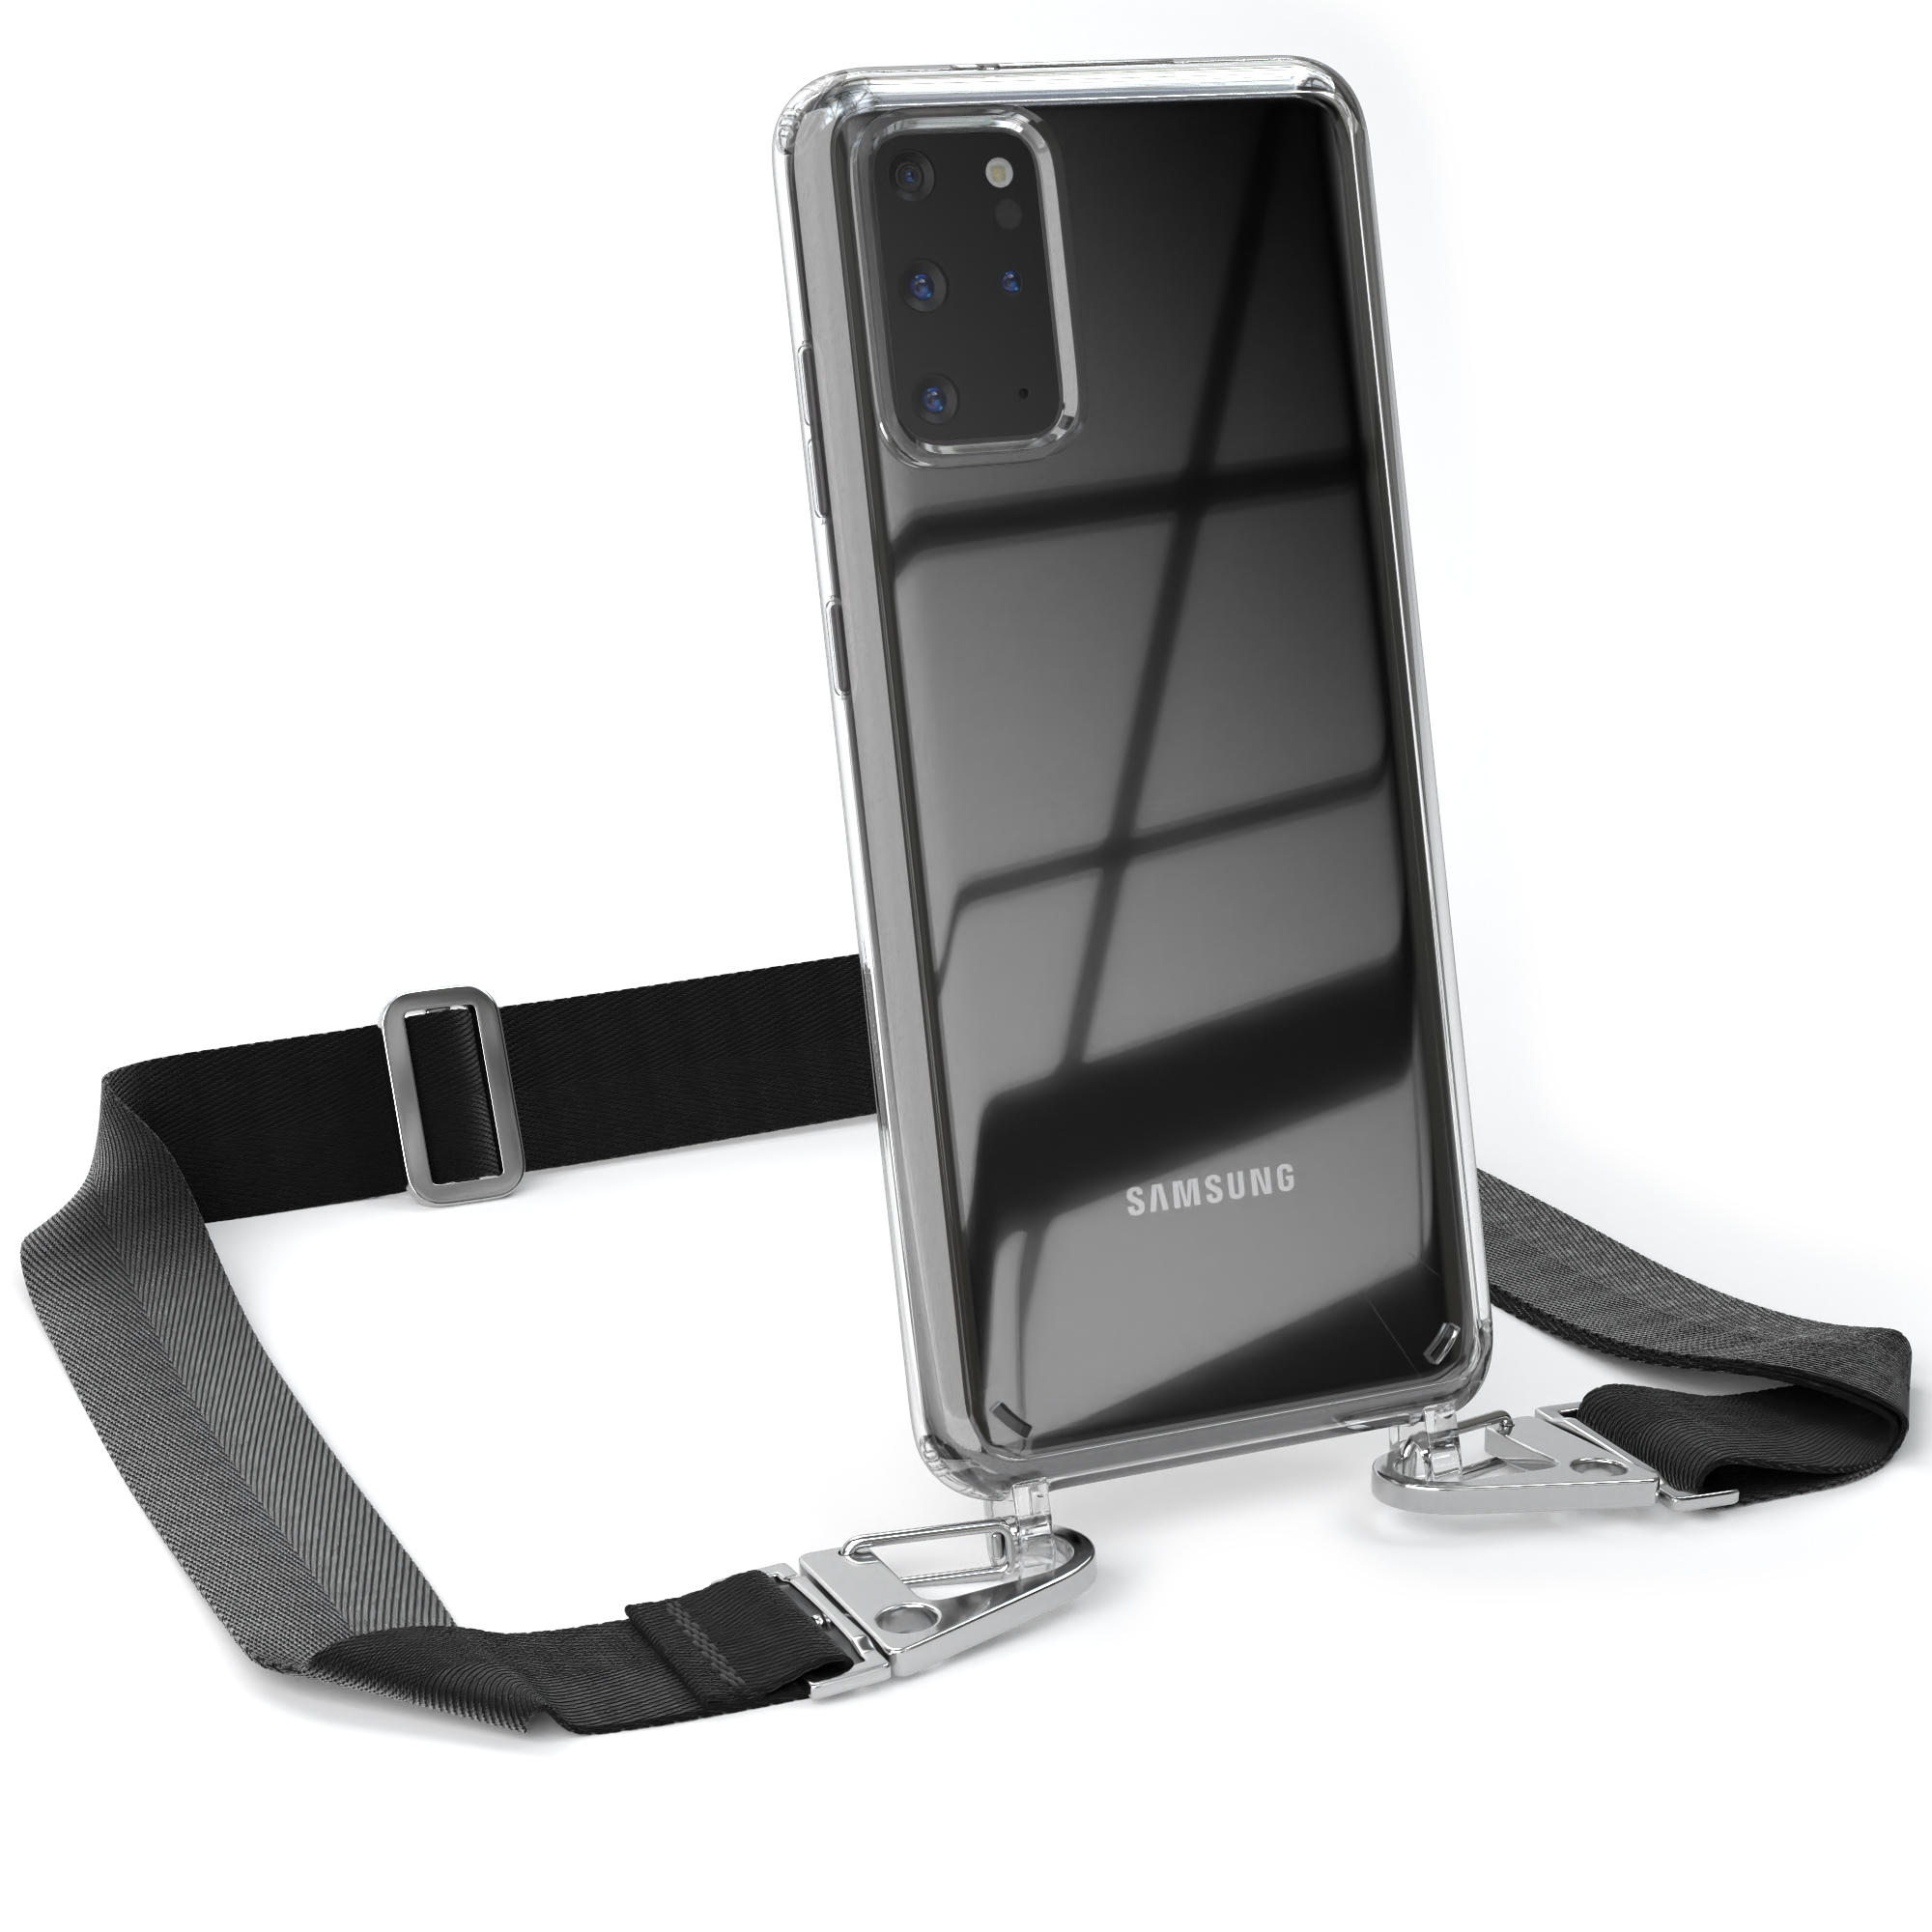 EAZY CASE Transparente Handyhülle mit Silber S20 / Samsung, Umhängetasche, Galaxy breiter Plus Schwarz 5G, Karabiner, S20 Plus Kordel + 